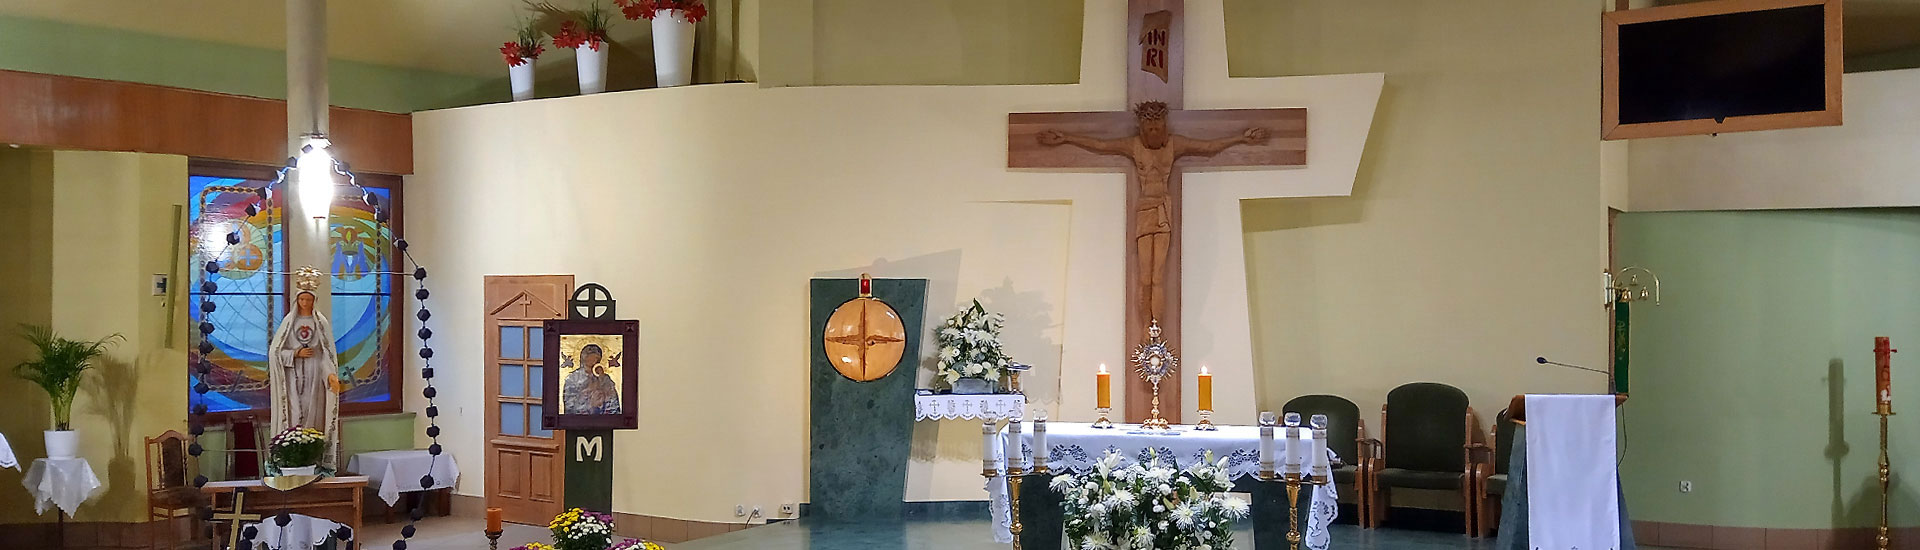 Parafia św. Brata Alberta w Jastrzębiu-Zdroju